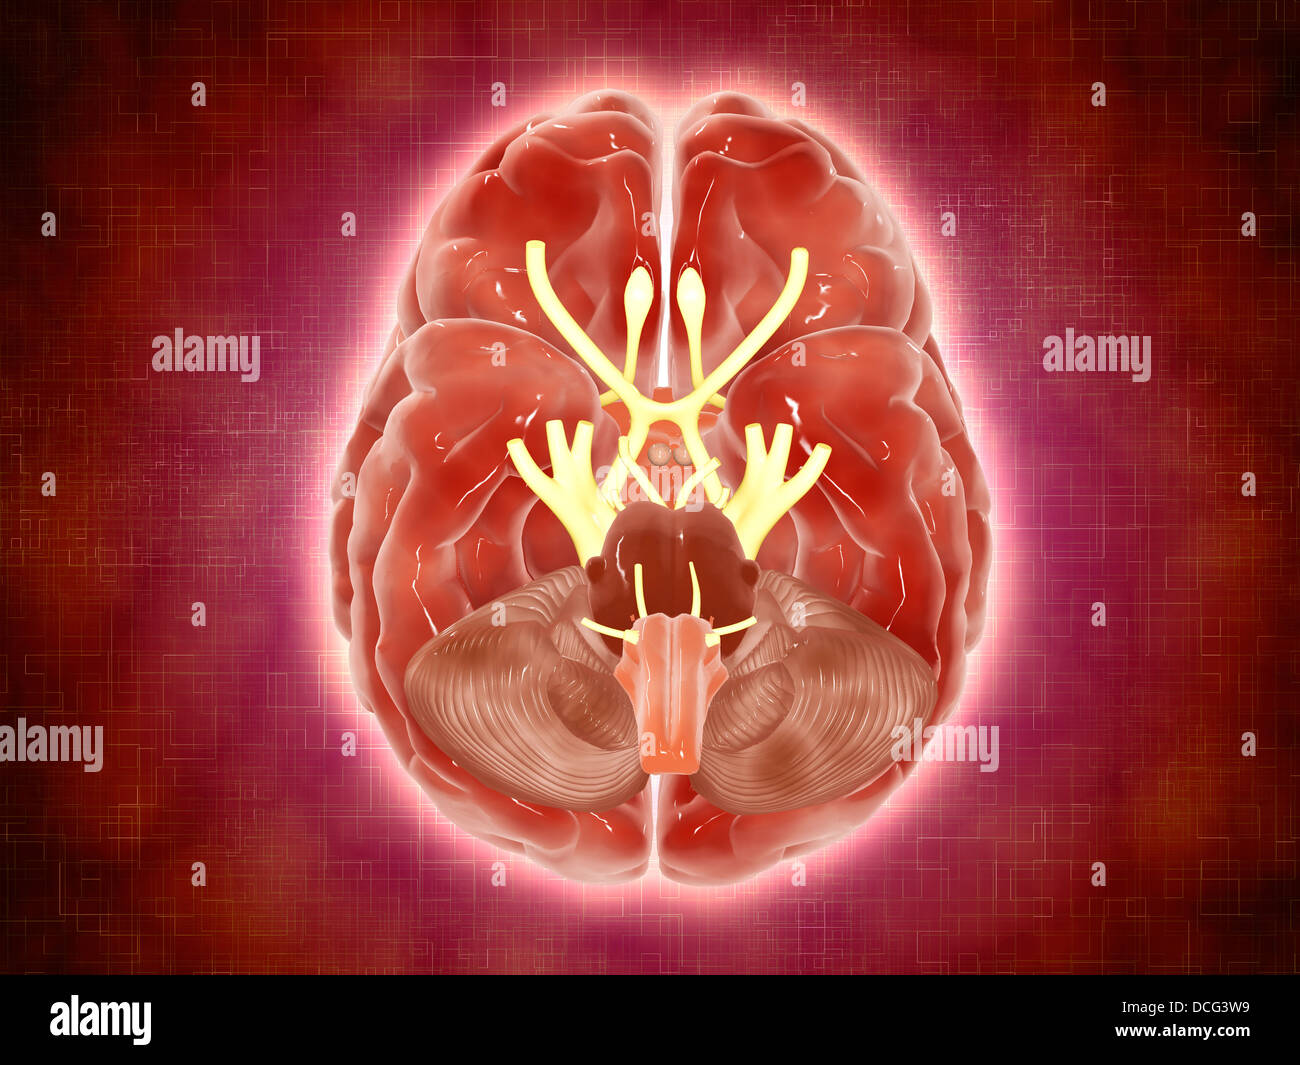 Immagine concettuale di nervi cranici nel cervello umano. Foto Stock